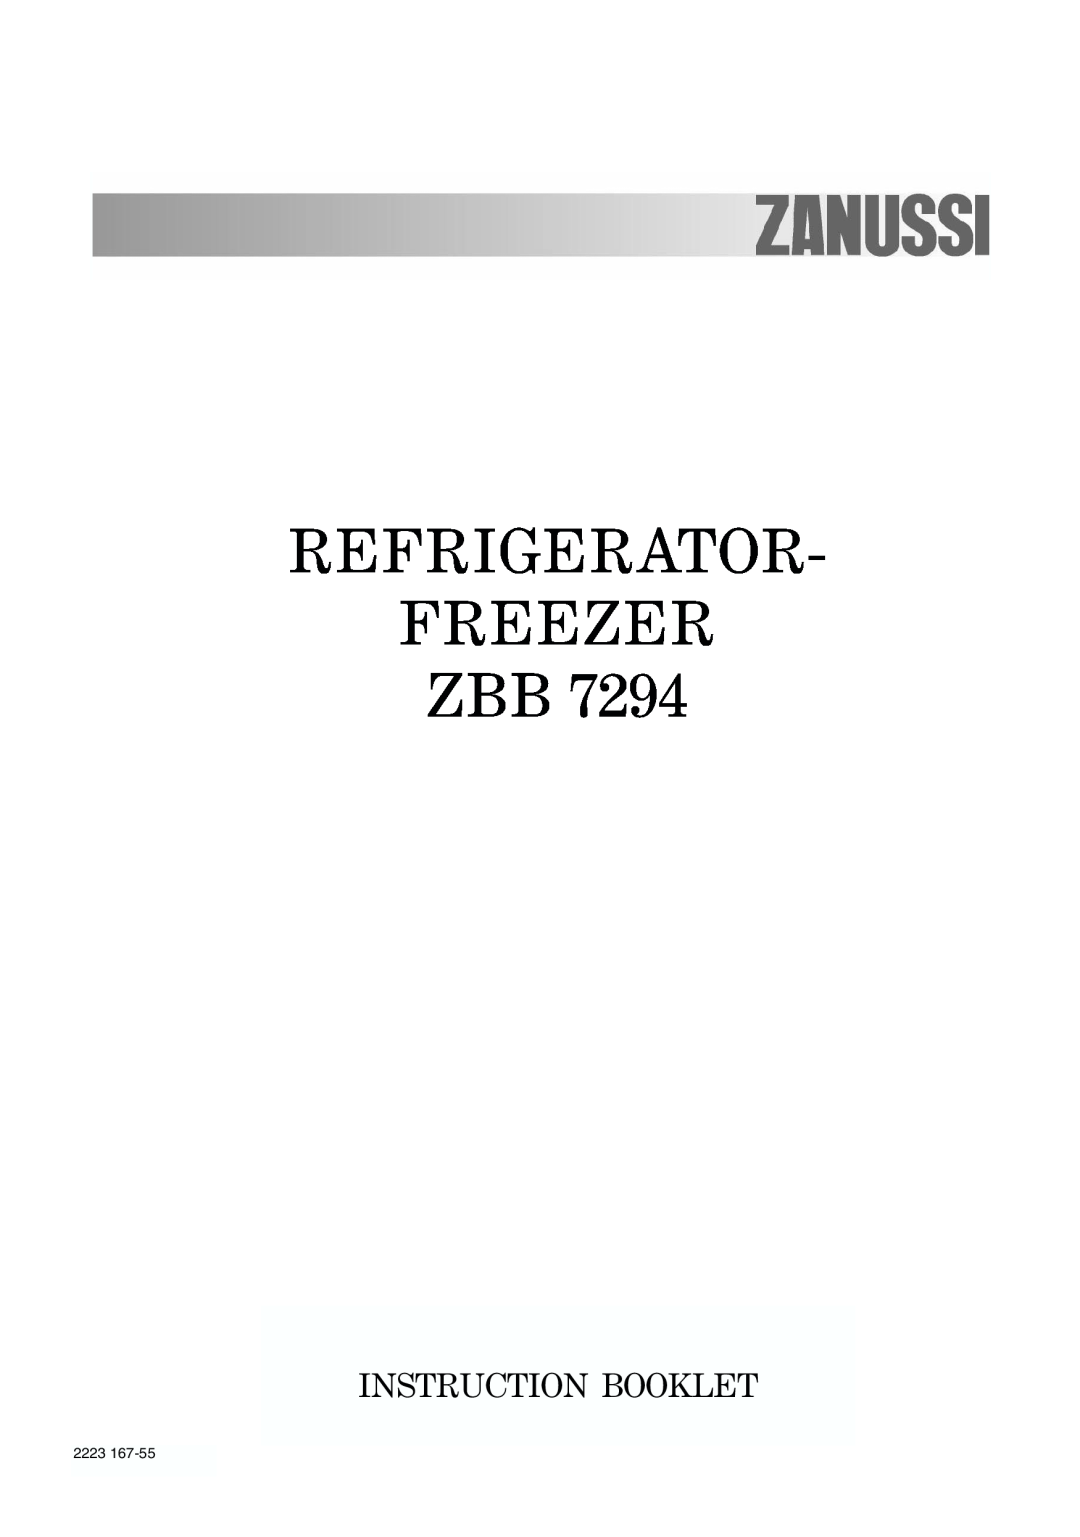 Zanussi ZBB 7294 manual Refrigerator Freezer Zbb, Instruction Booklet 